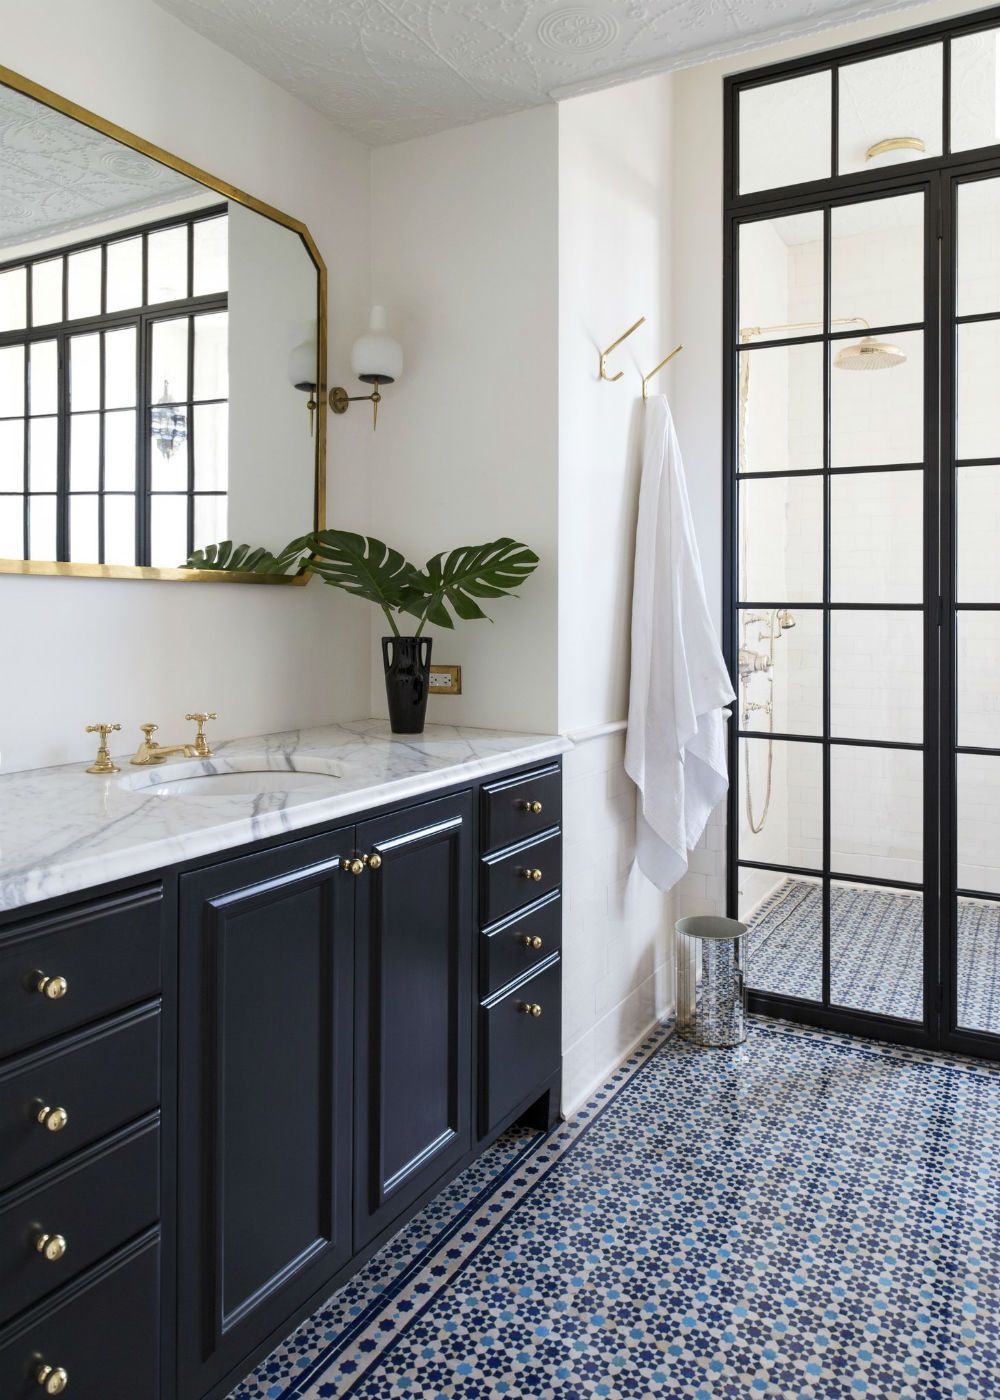 Во второй ванной комнате компания White Arrow покрыла пол яркой марокканской плиткой от фирмы Marrakech Designs.